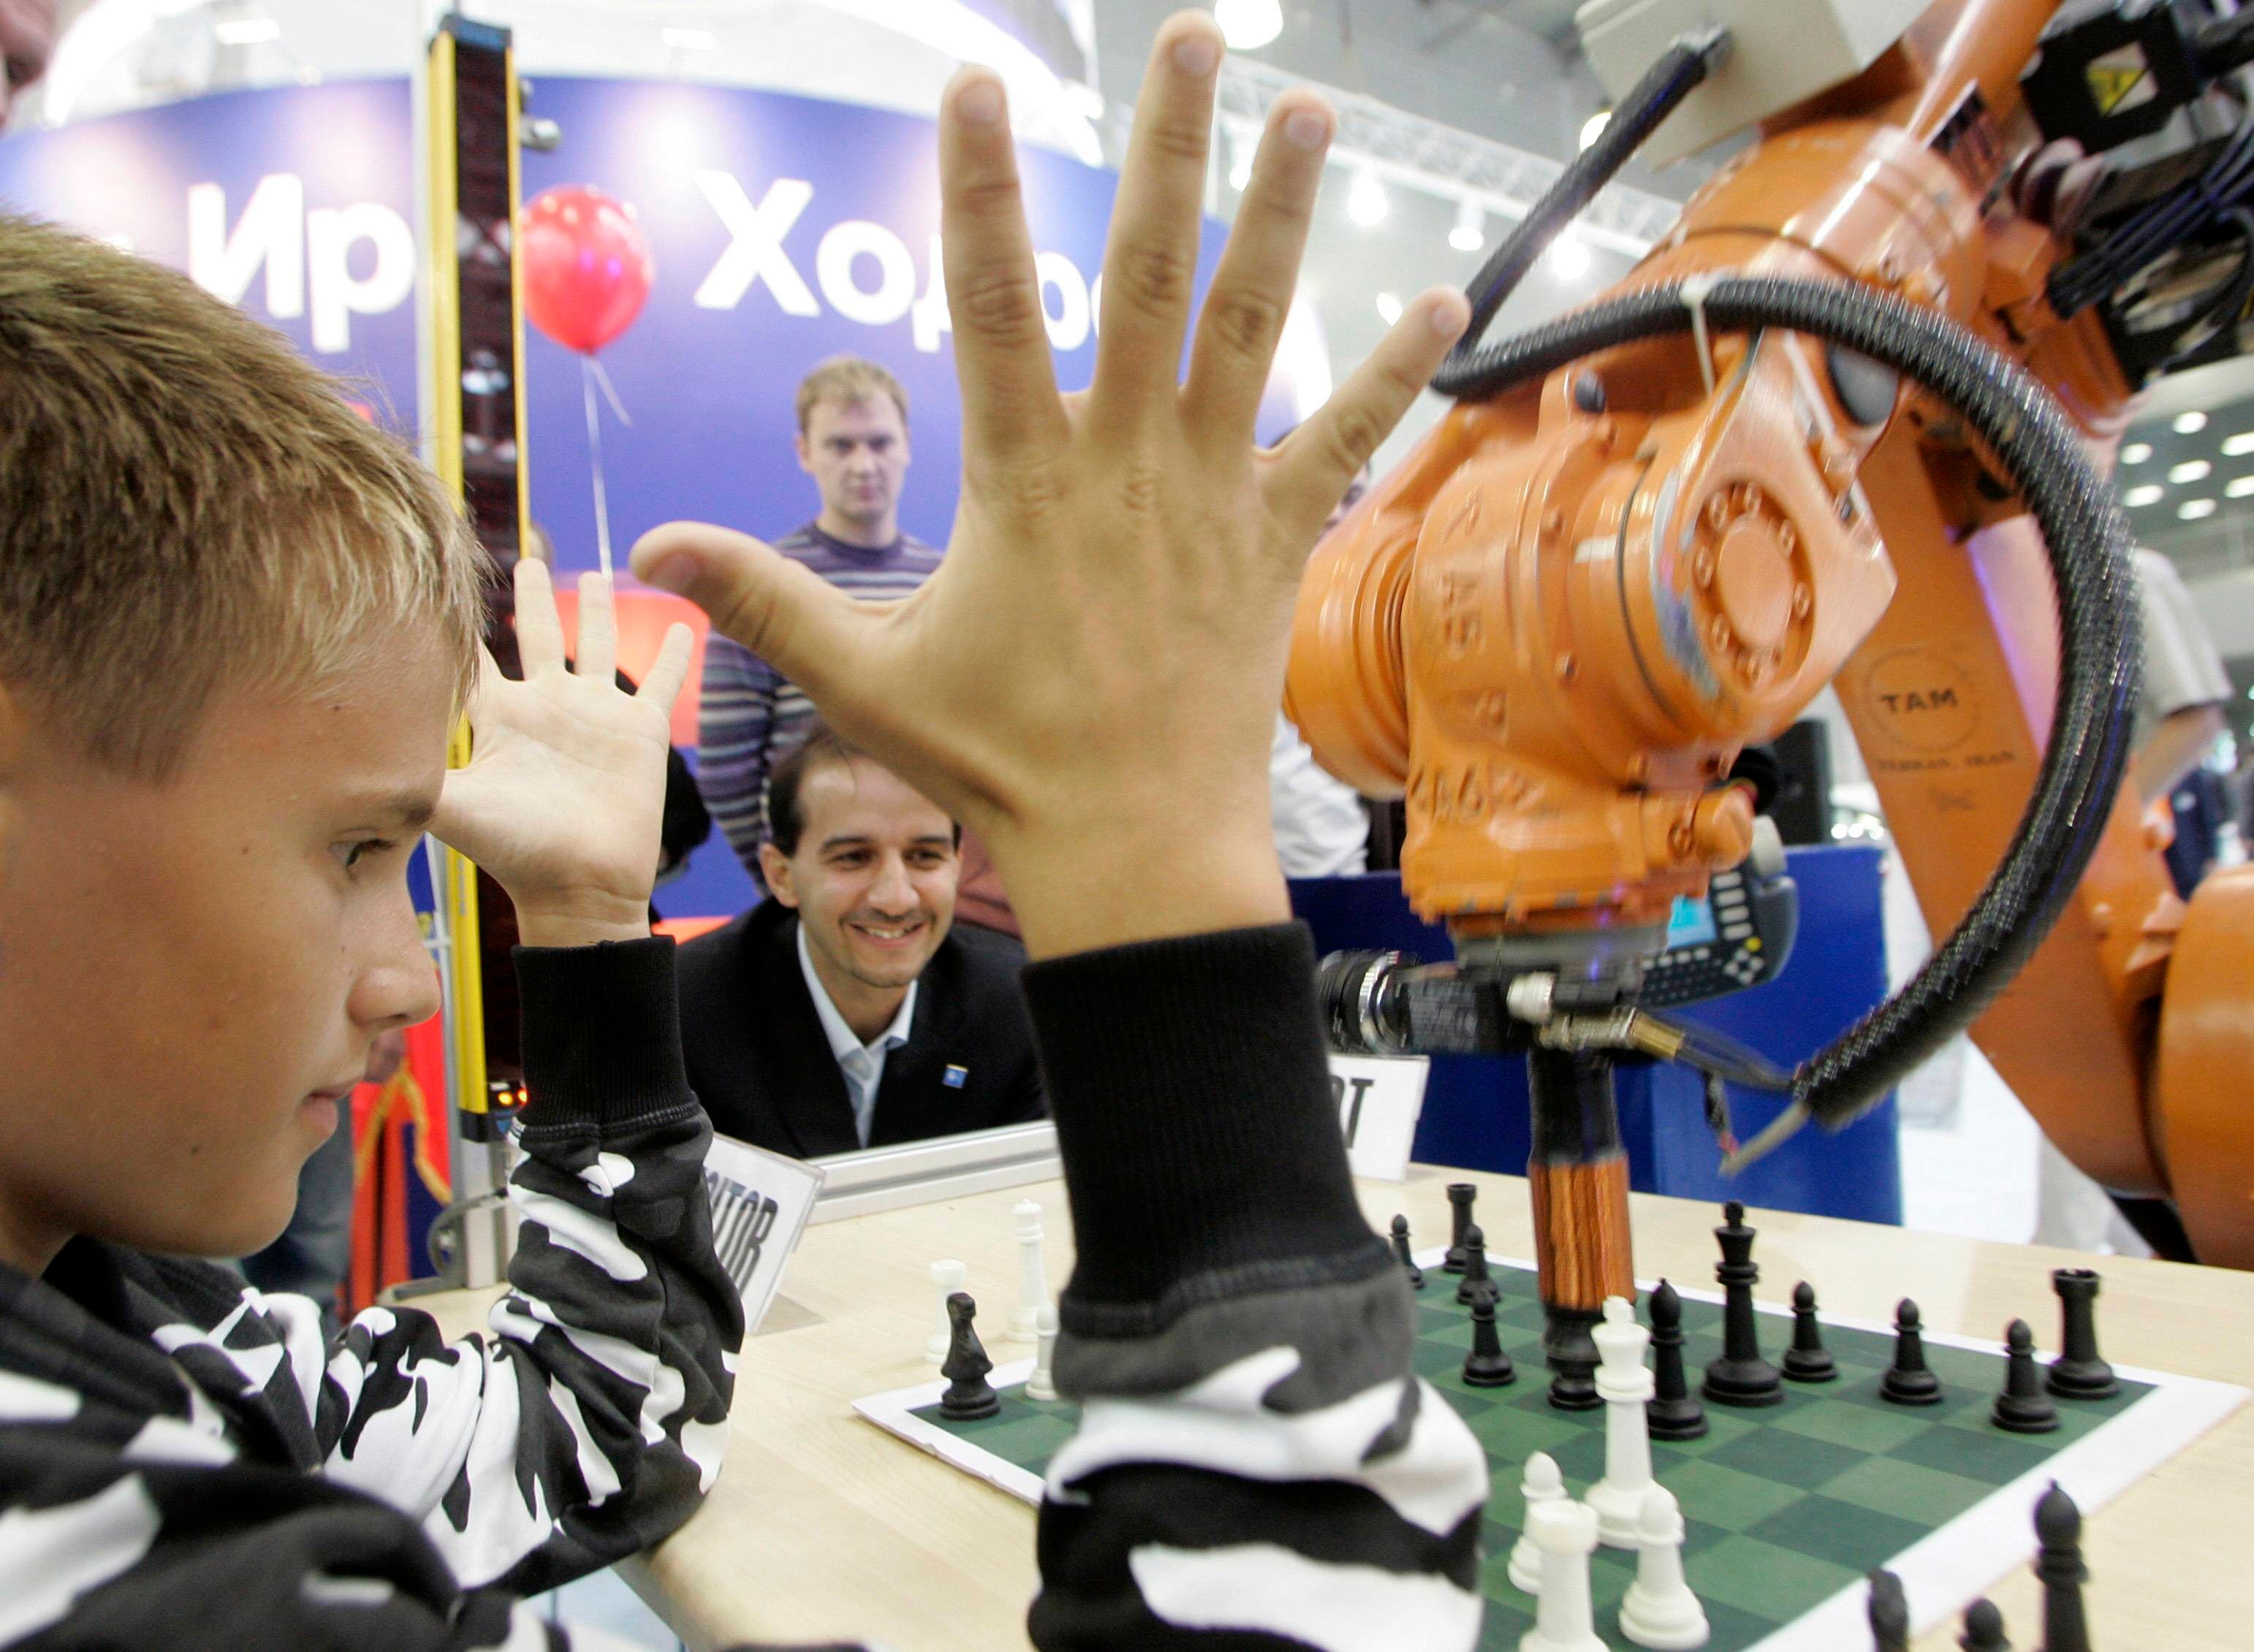 Crean el robot de ajedrez perfecto, capaz de aprender por sí mismo